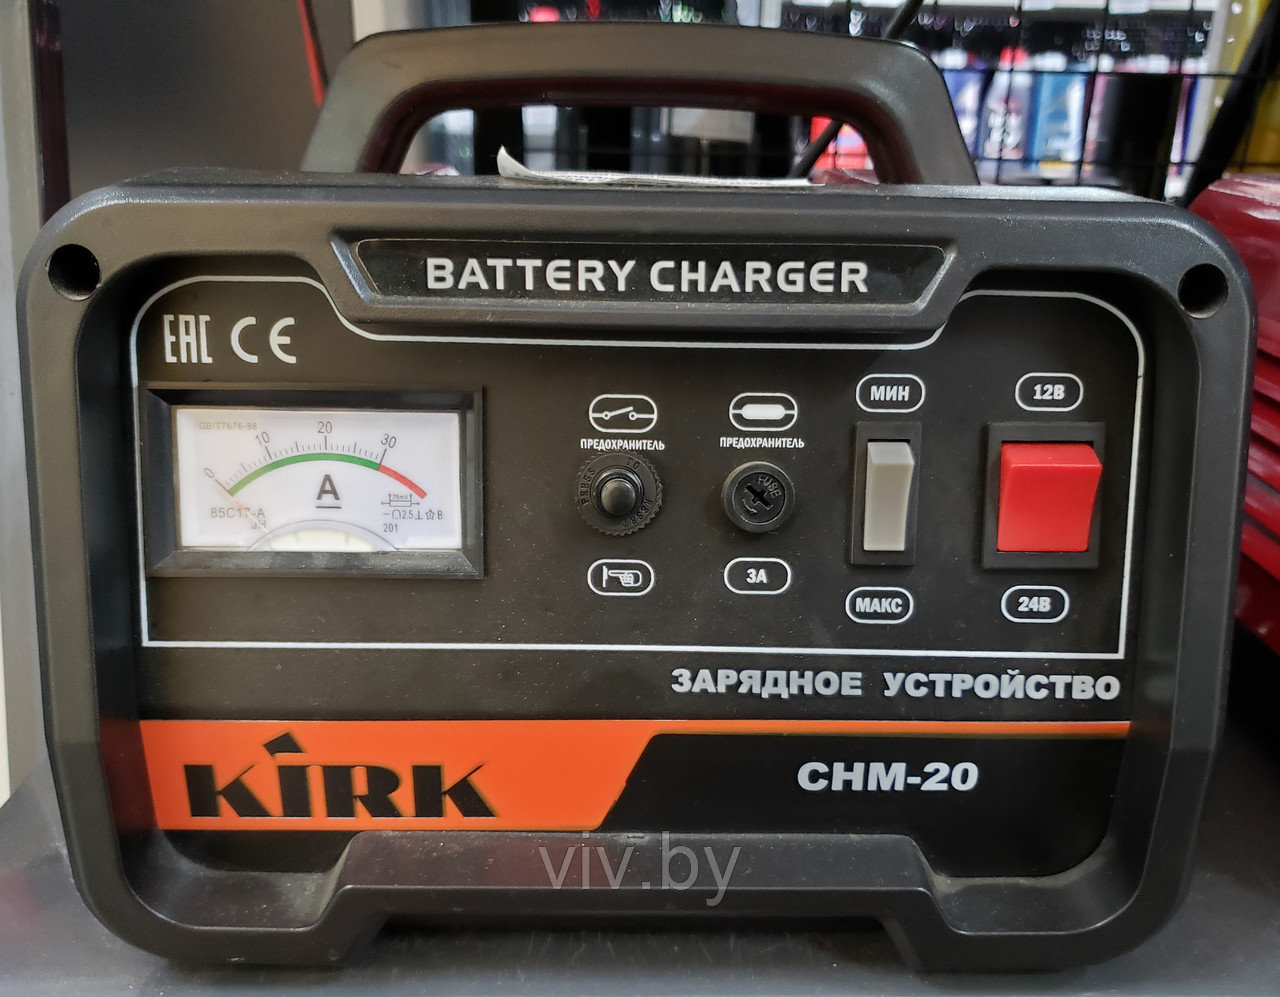 Зарядное устройство Kirk CHM-20